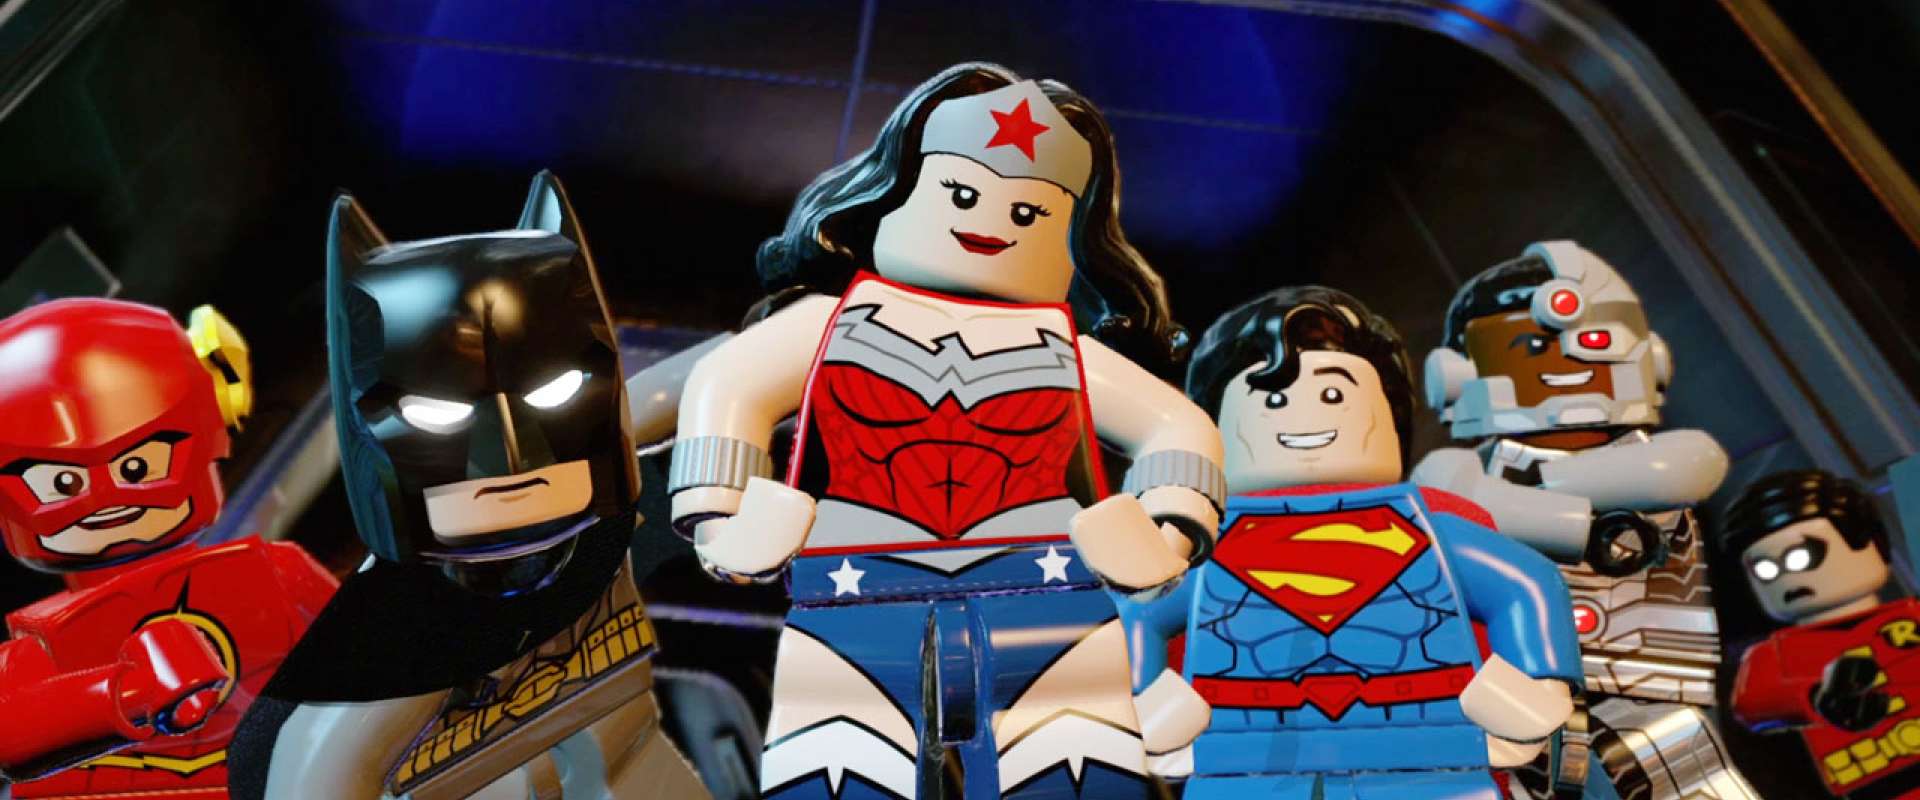 Conheça alguns dos dubladores de LEGO Batman 3: Beyond Gotham [vídeo] -  Tribo Gamer